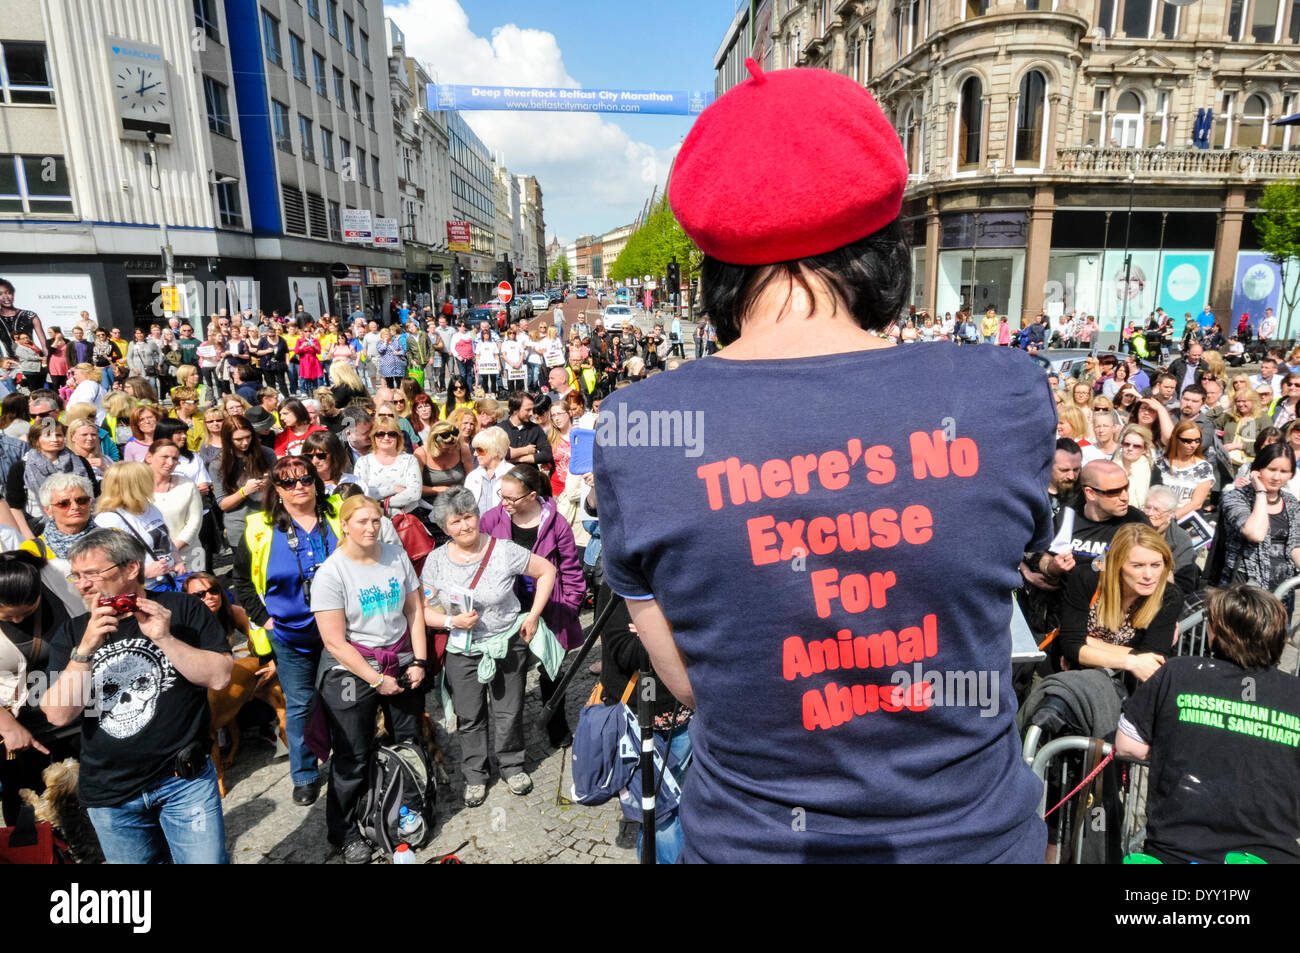 Belfast, Irlanda del Nord. 27 apr 2014 - centinaia di persone si riuniscono per un rally per chiedere la fine di crudeltà nei confronti degli animali e una legislazione più severa per i tossicodipendenti. Credito: Stephen Barnes/Alamy Live News Foto Stock